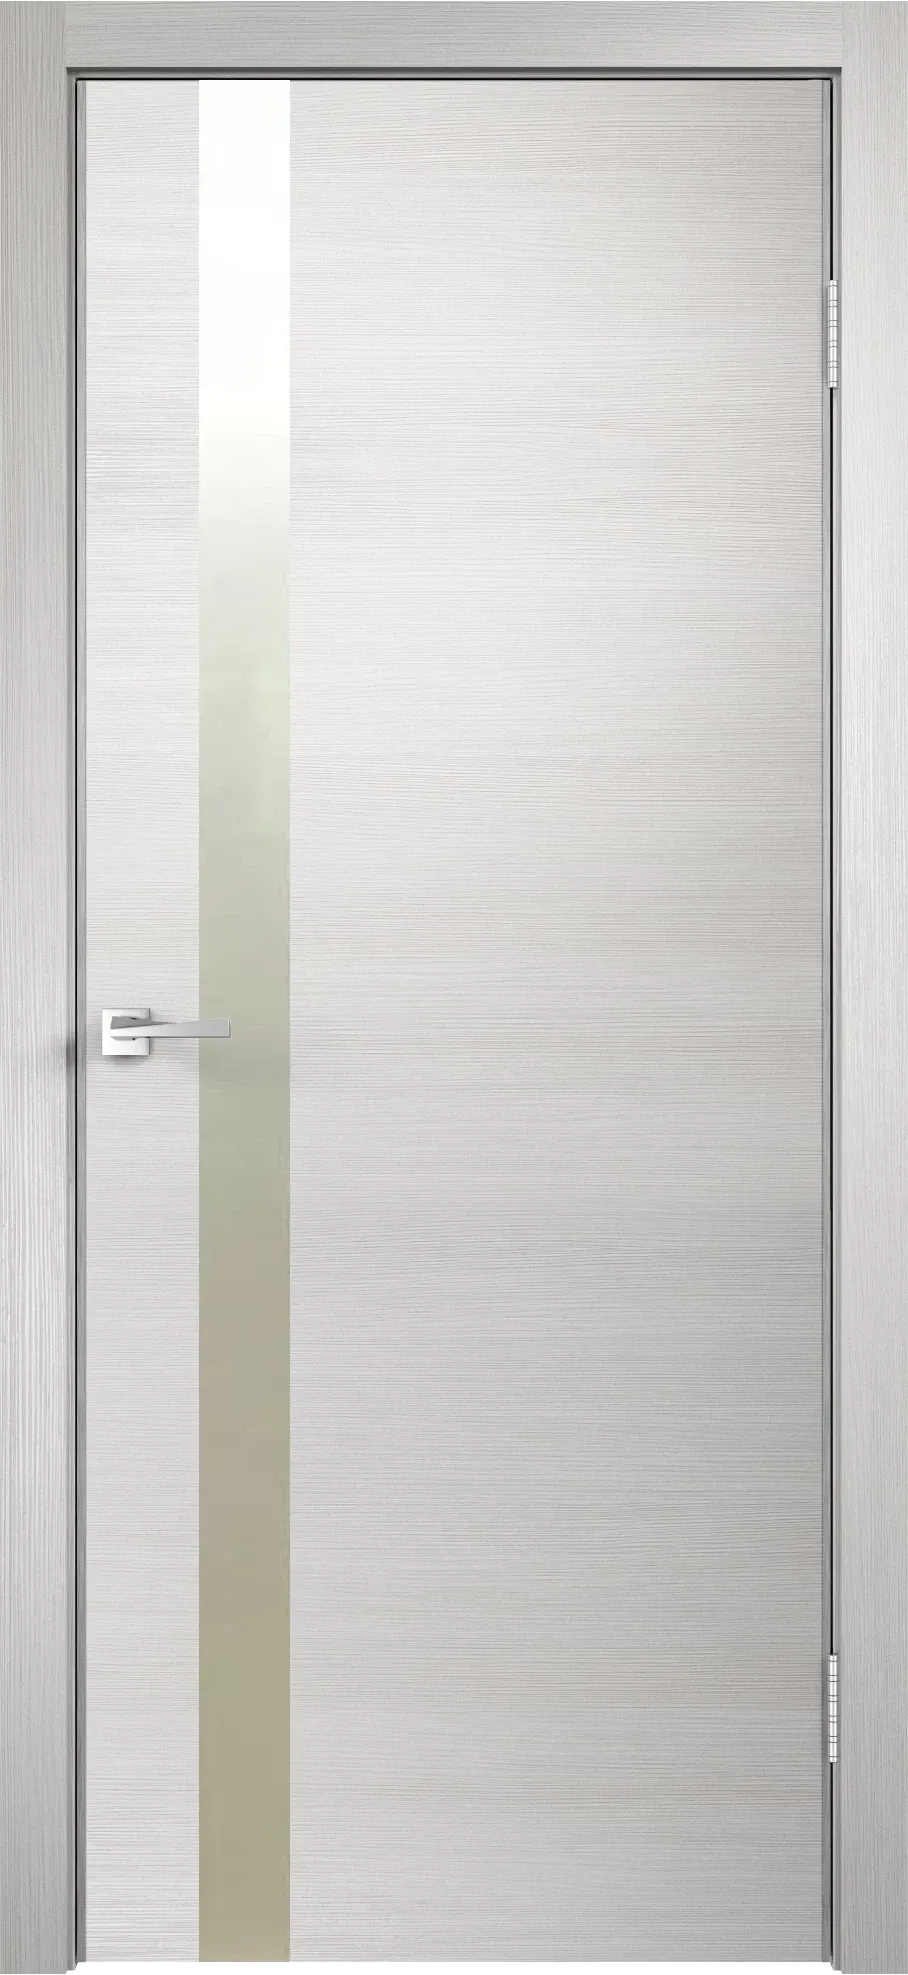 Velldoris межкомнатная дверь экошпон techno облегченное z1 дуб белый поперечный 700Х2000